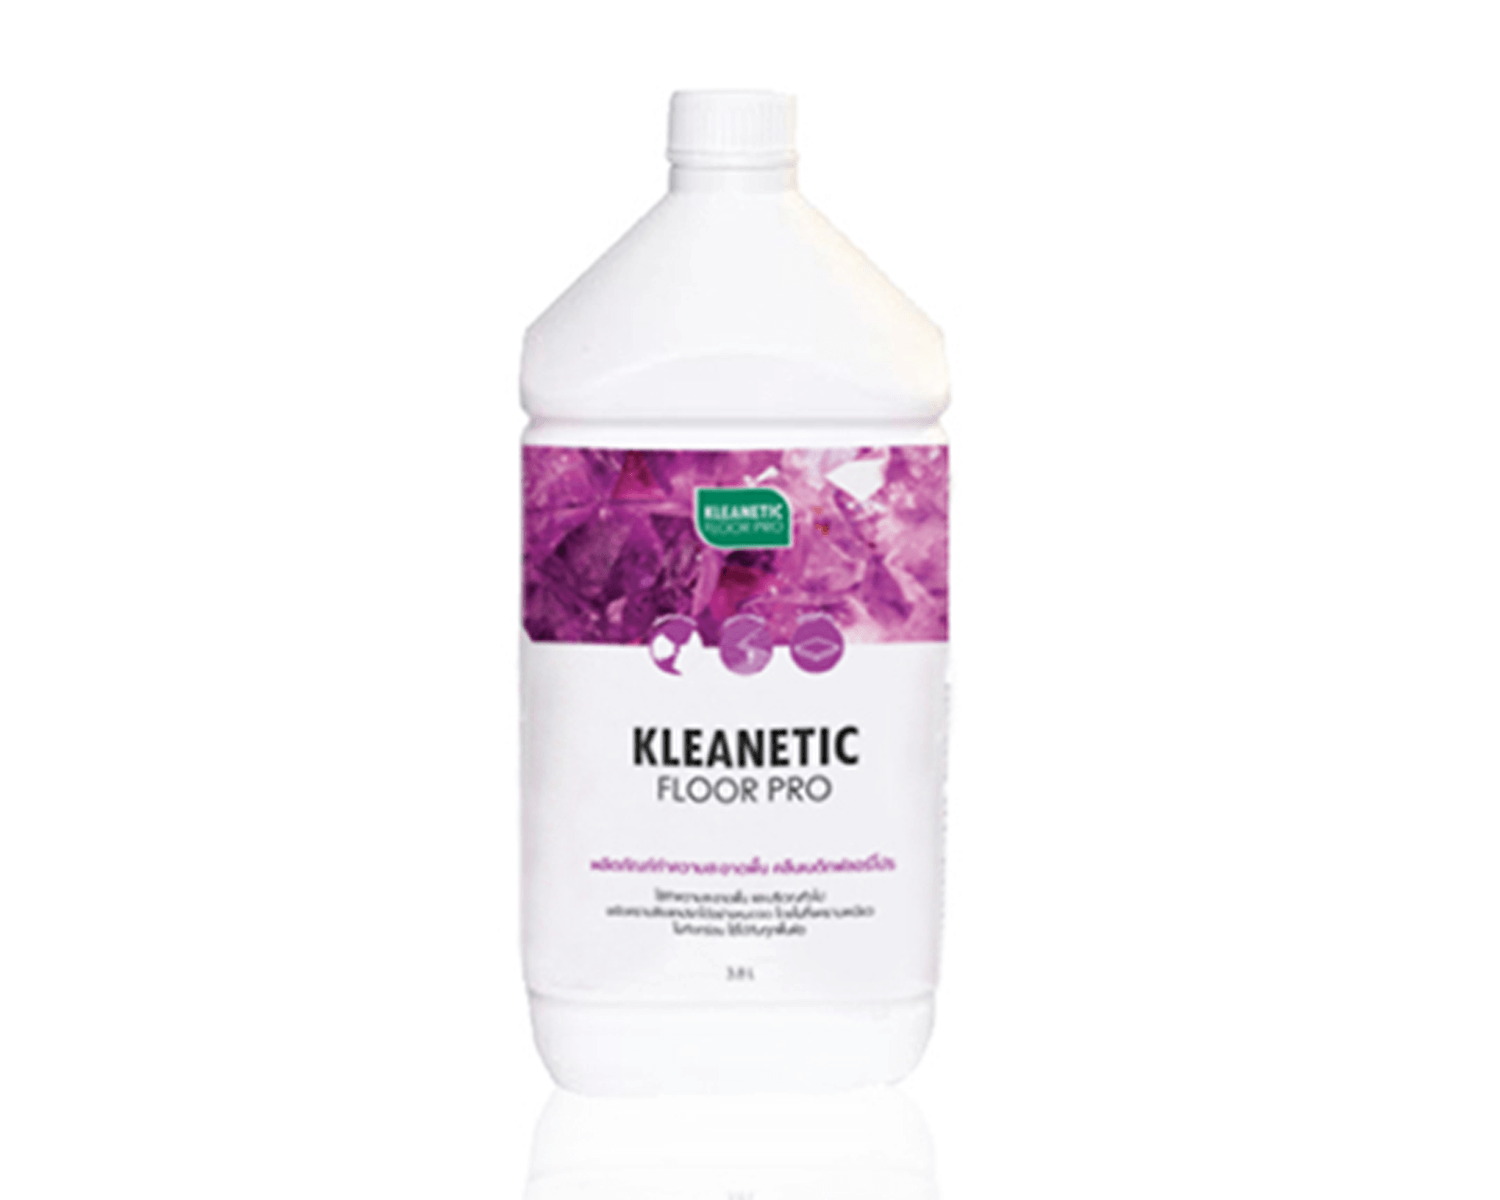 ผลิตภัณฑ์ทำความสะอาดพื้น Kleanetic Floor Pro กลิ่น Crystal Pink 3.8L